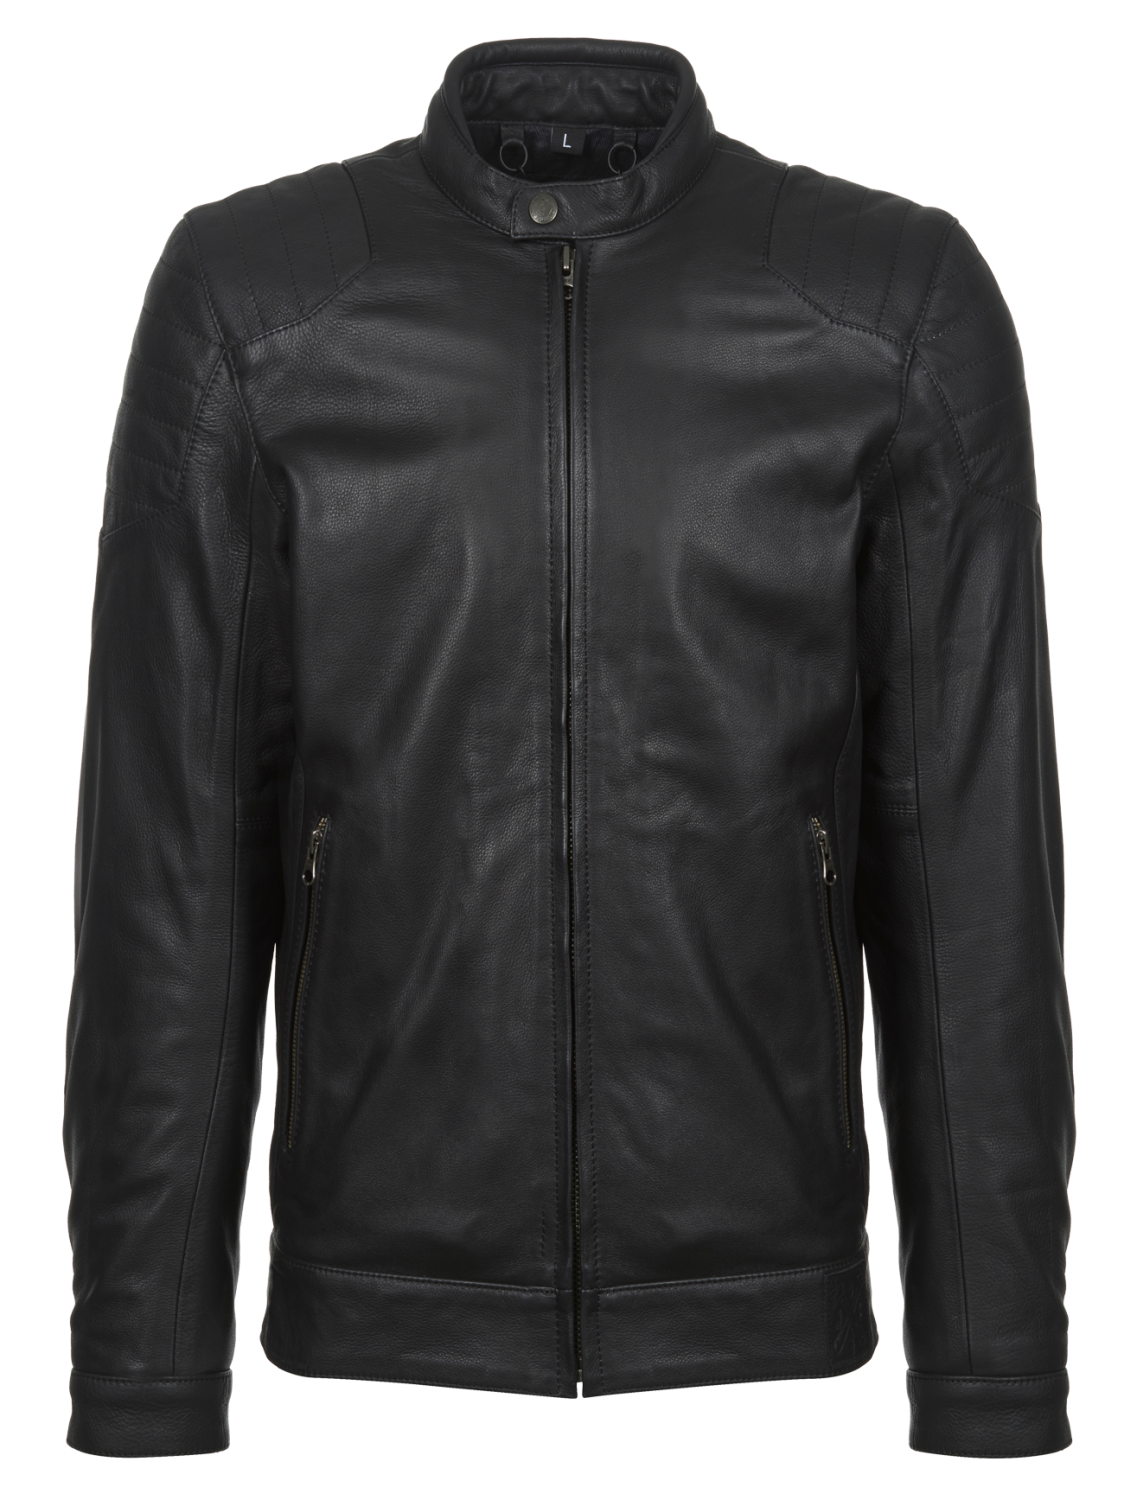 John Doe Roadster Leather Jacket Kevlar ®